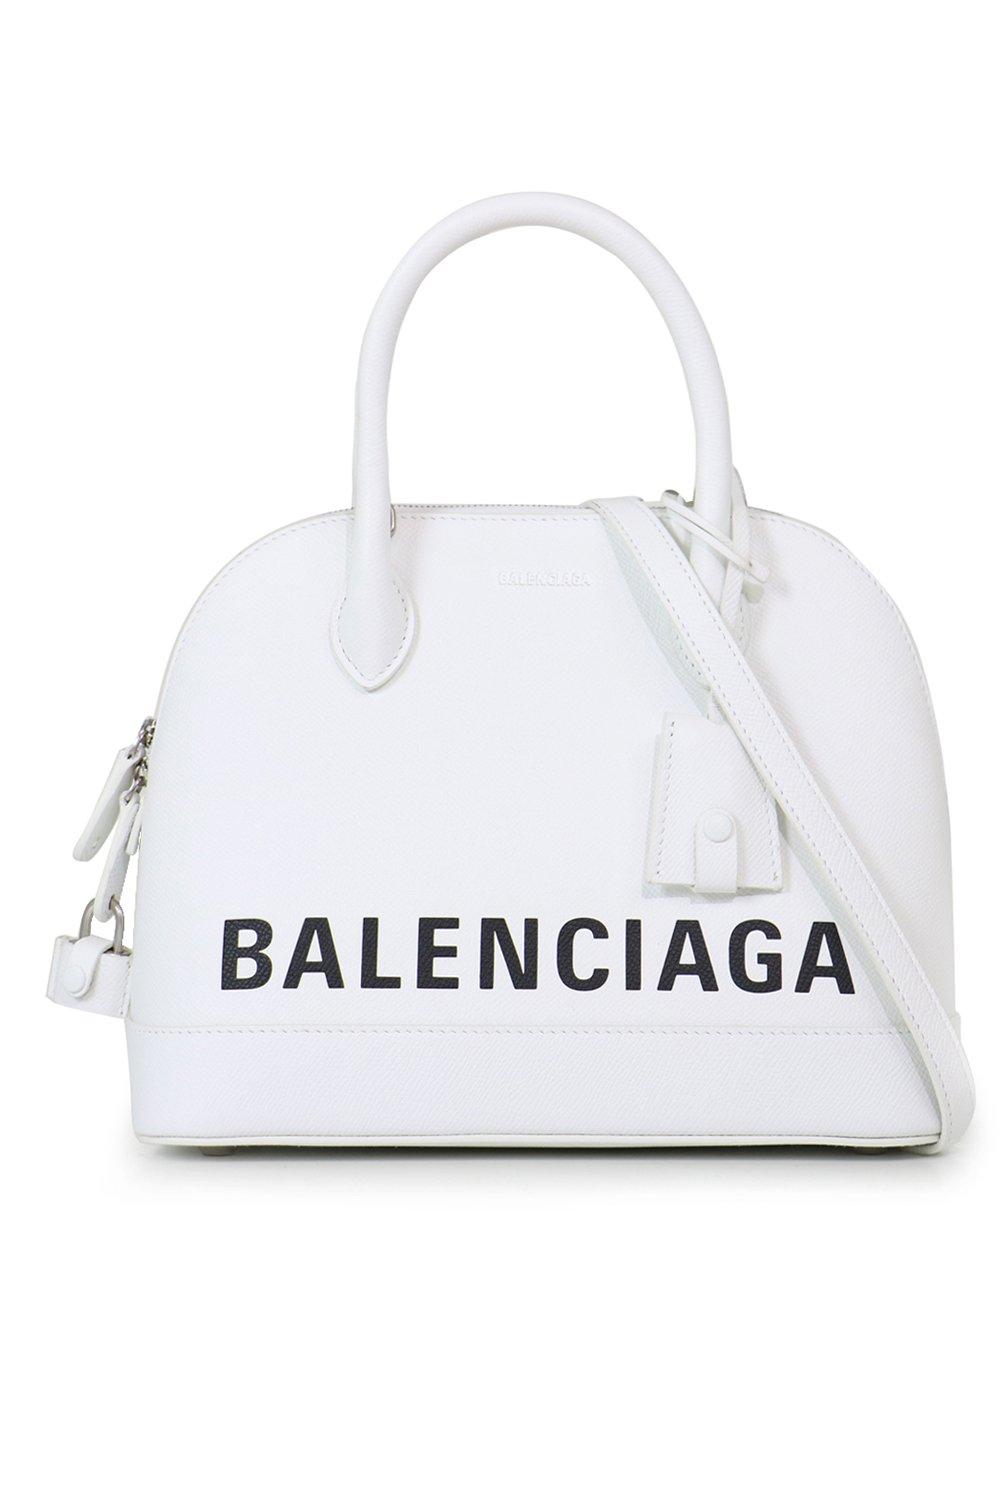 Balenciaga Leather Ville Small Graffiti Bag White in Black - Lyst